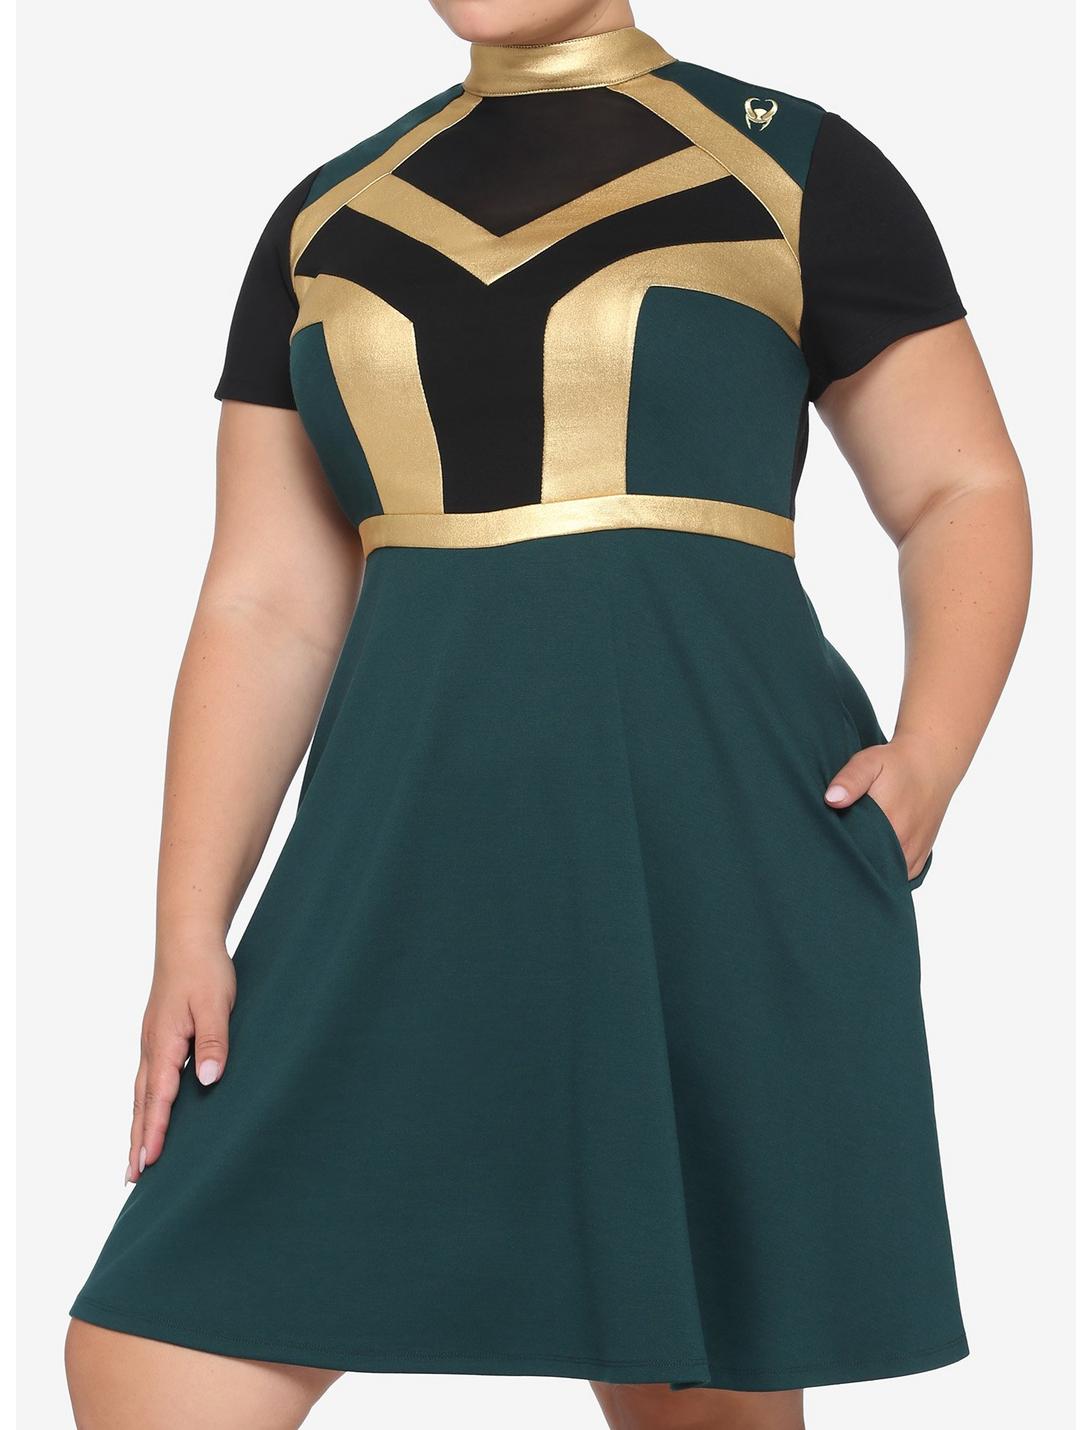 Her Universe Marvel Loki Mock Neck Mesh Inset Panel Dress Plus Size, MULTI, hi-res